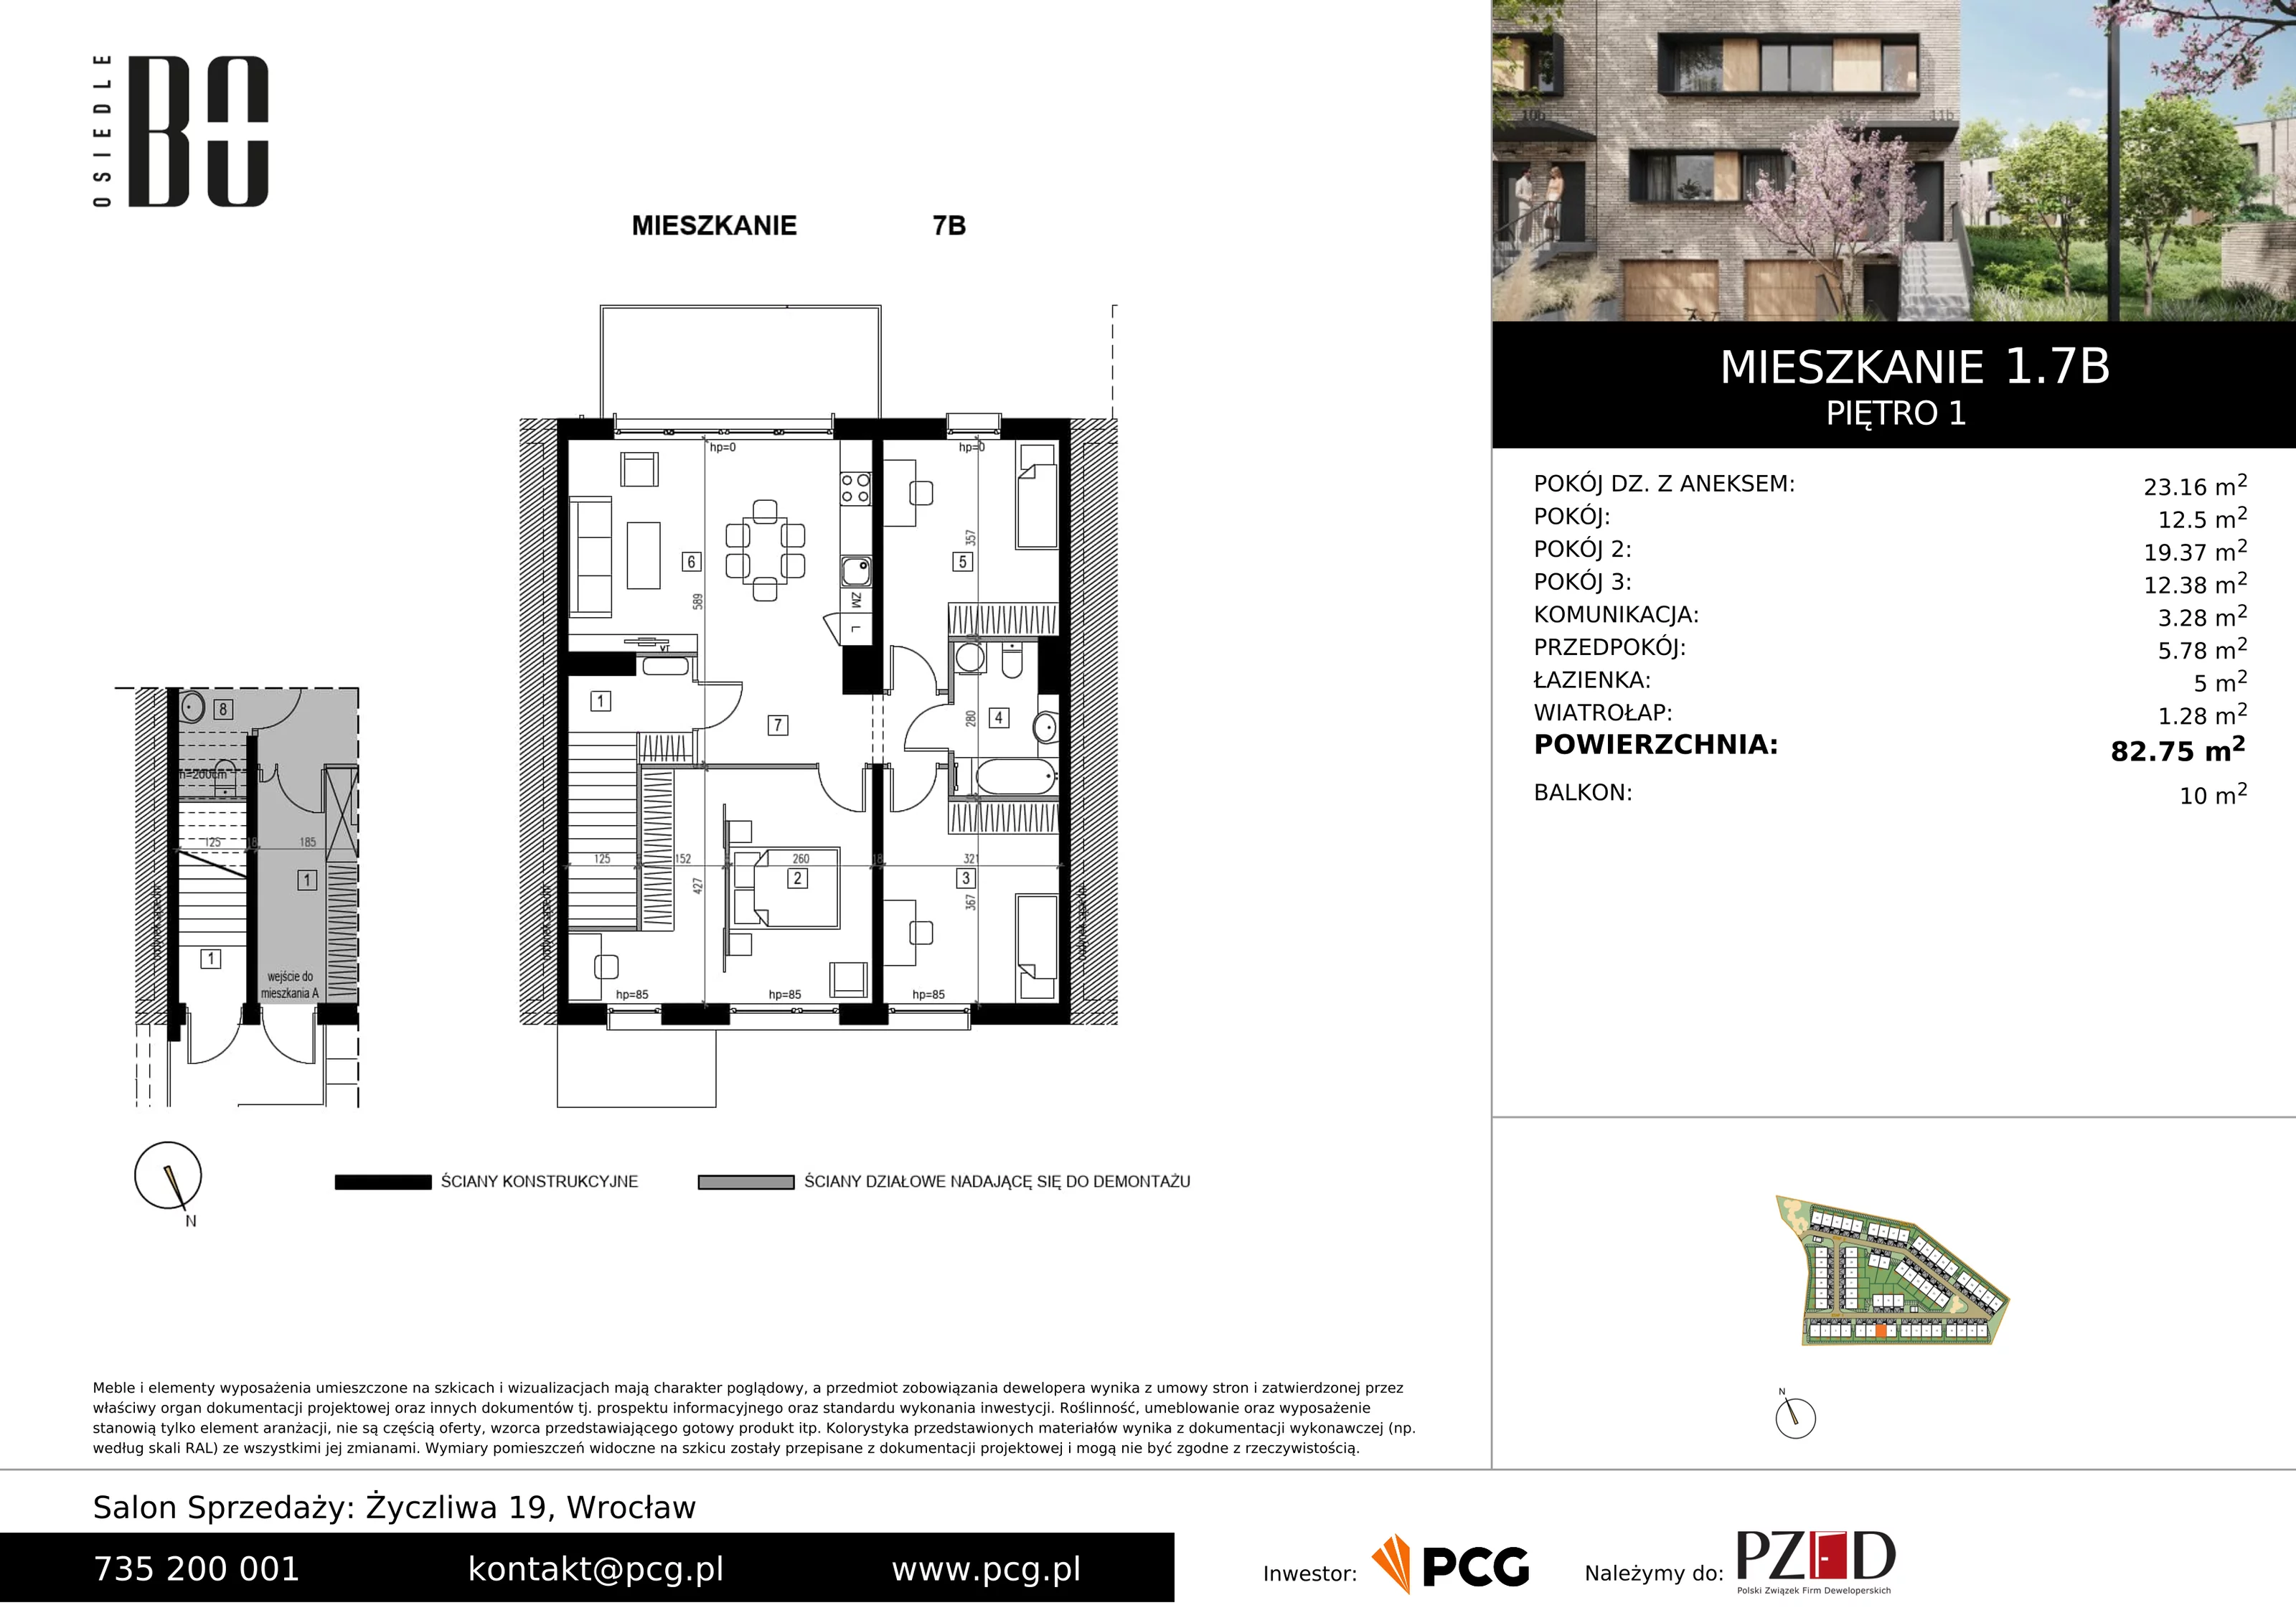 Apartament 82,75 m², piętro 1, oferta nr 1.7B, Osiedle BO, Wrocław, Kowale, ul. Bociana